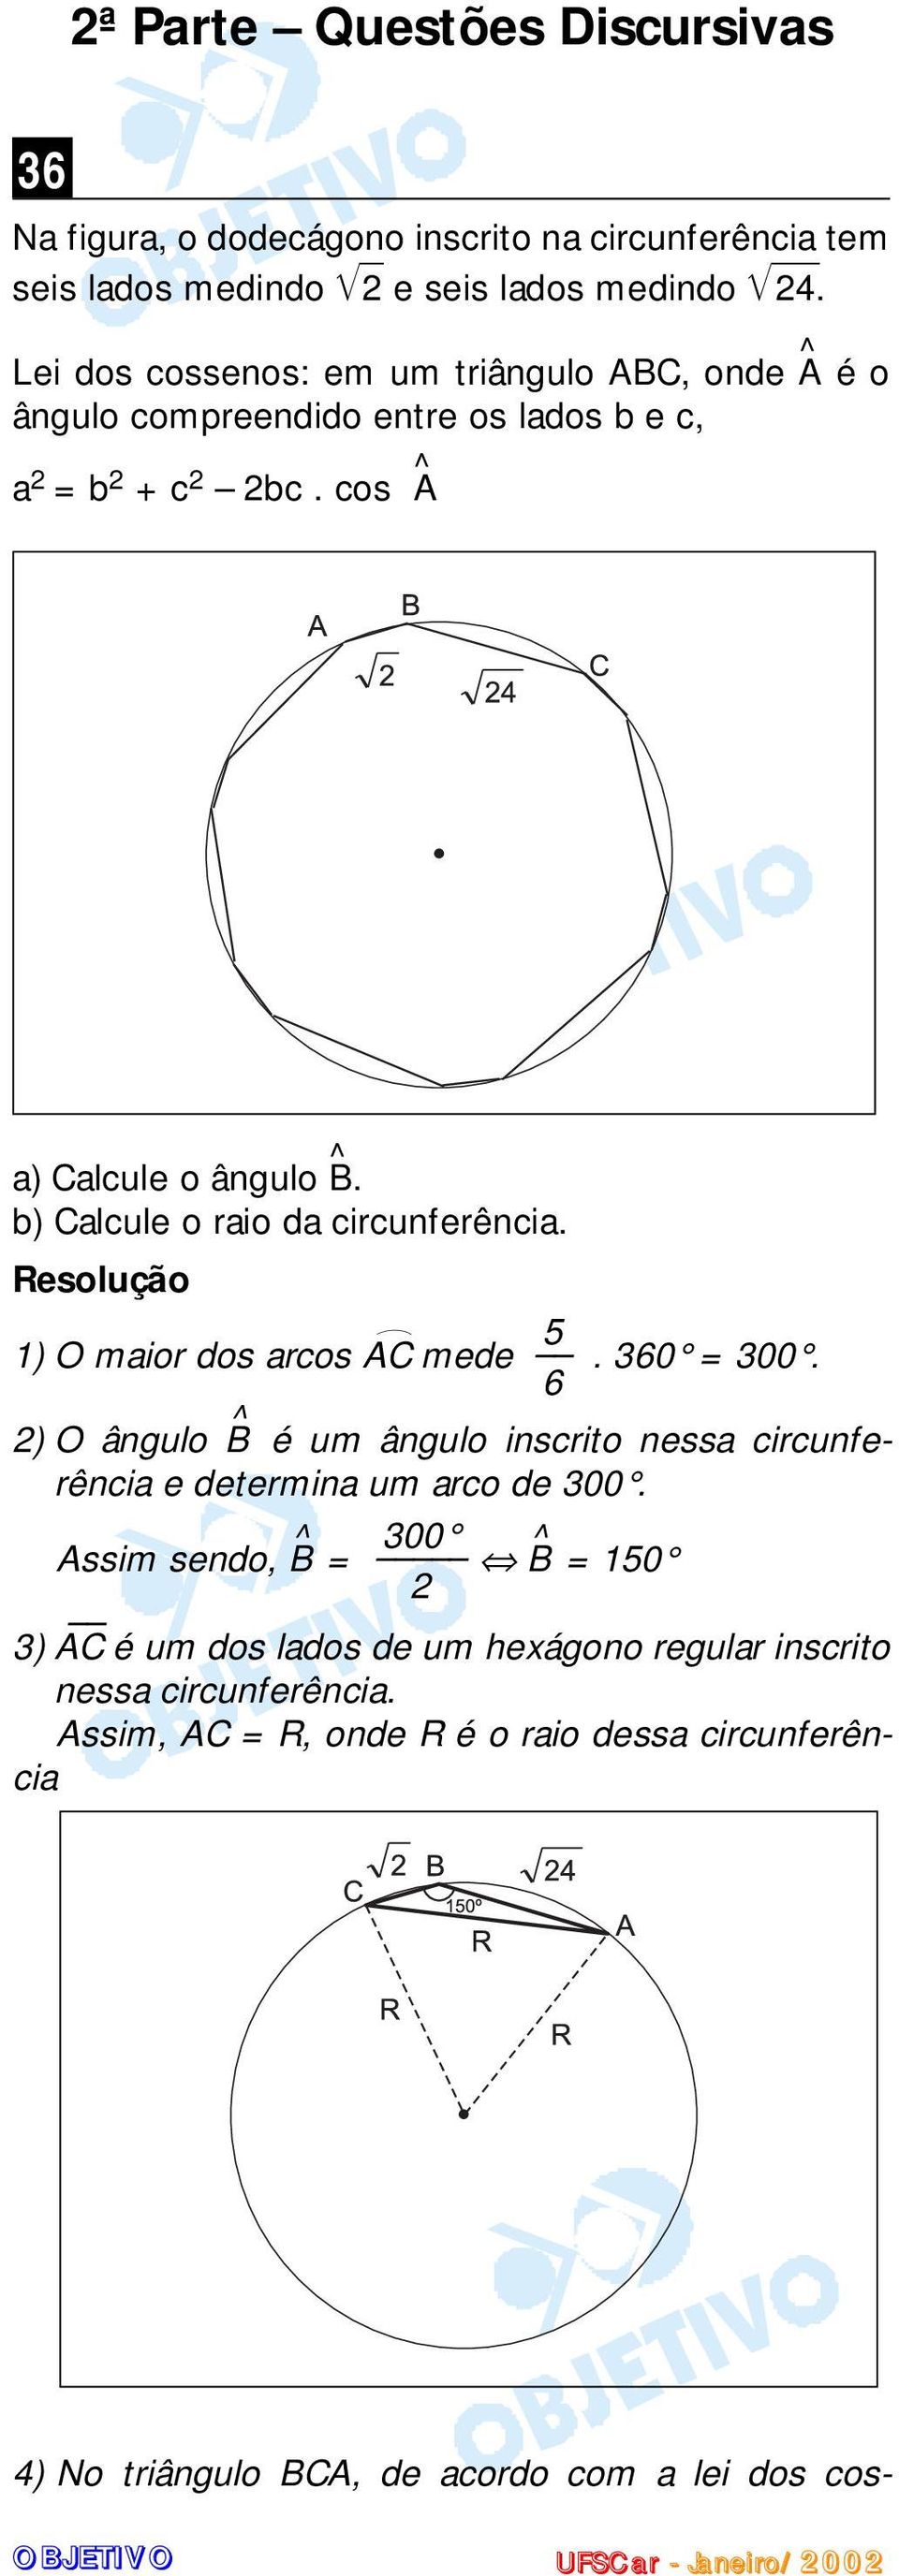 b Calcule o raio da circunferência. 1 O maior dos arcos AC 5 mede. 360 = 300. 6 O ângulo B^ é um ângulo inscrito nessa circunferência e determina um arco de 300.